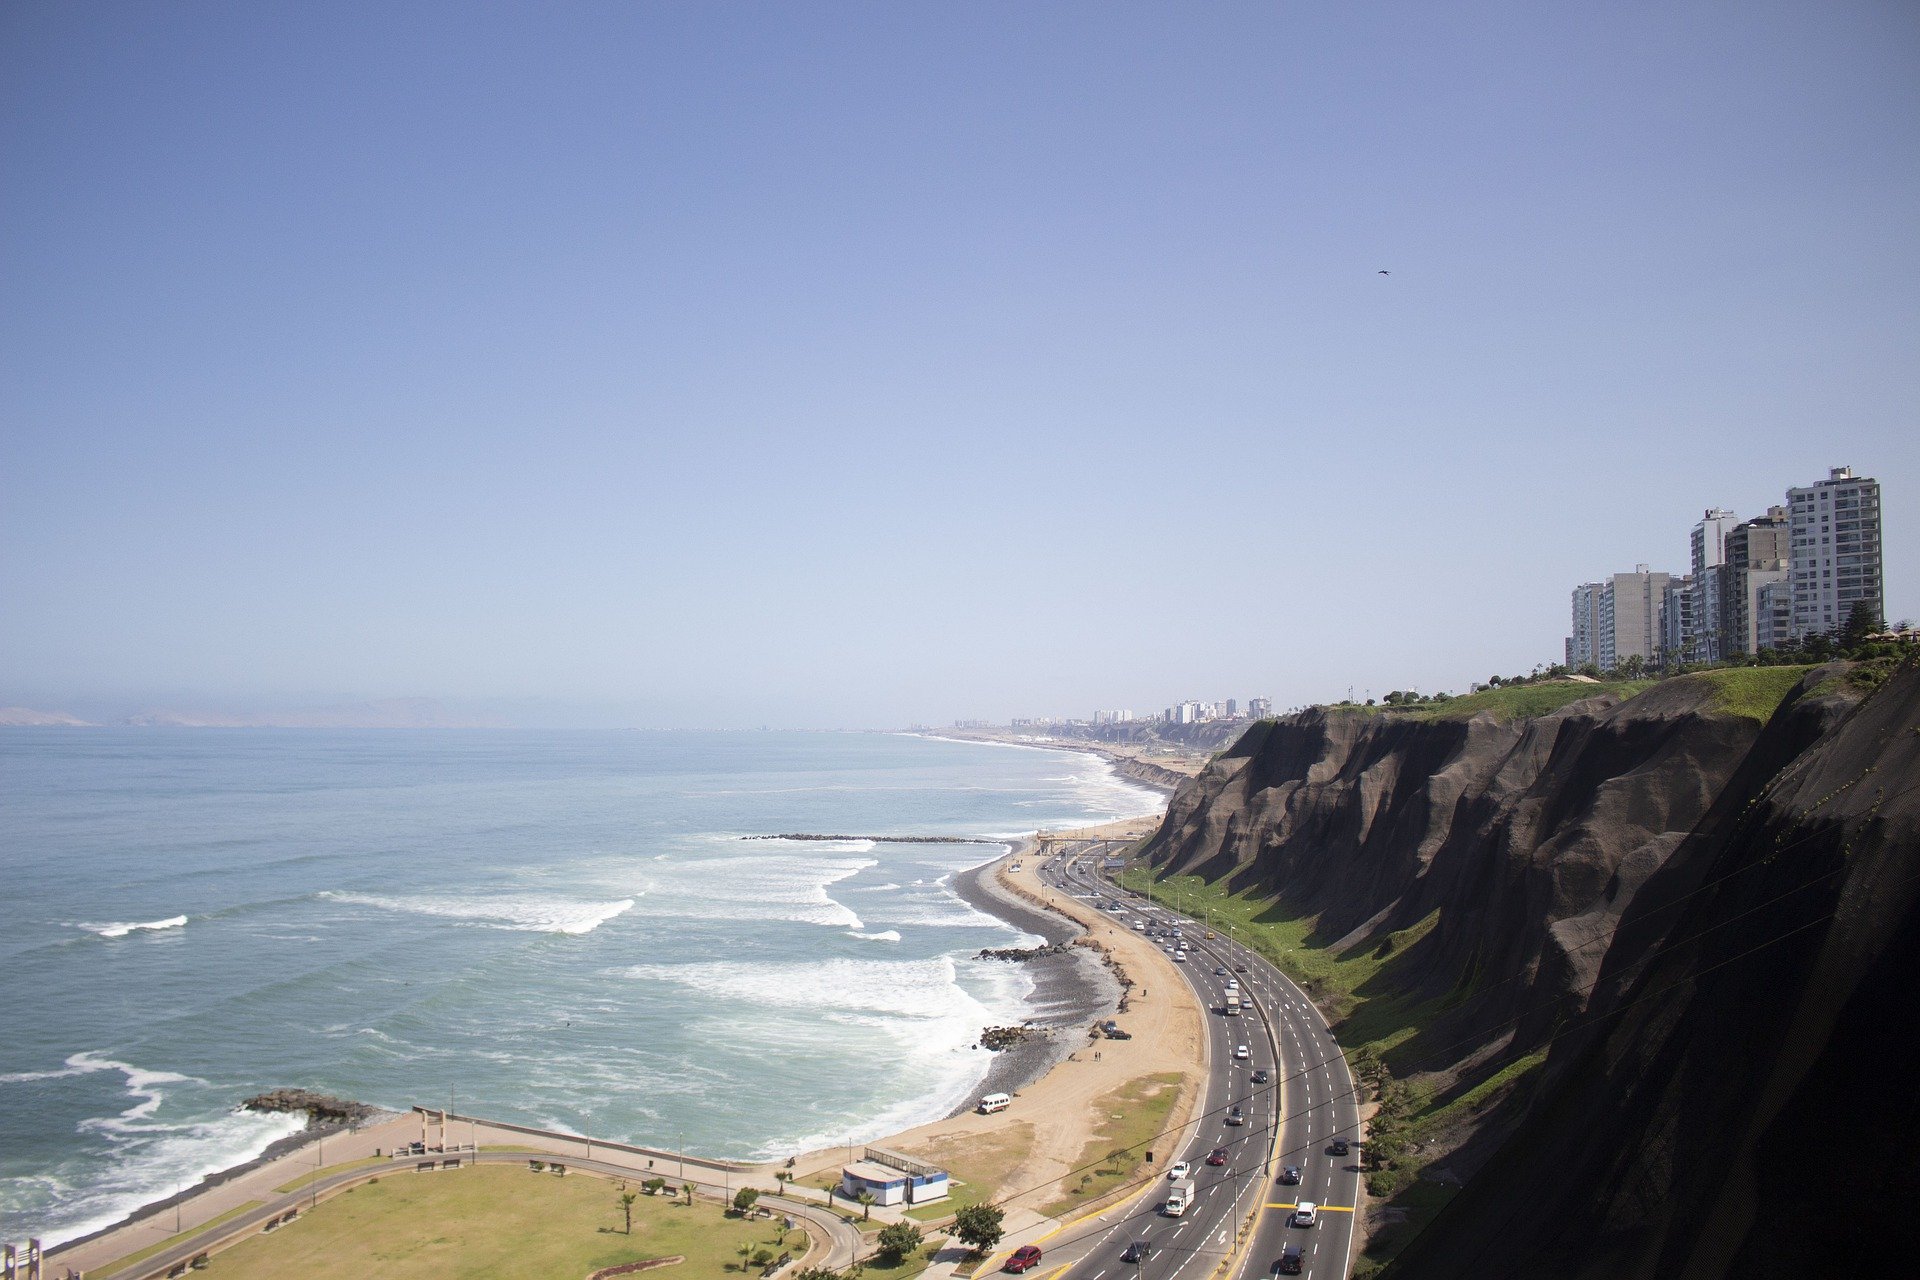 lugares turísticos de Lima